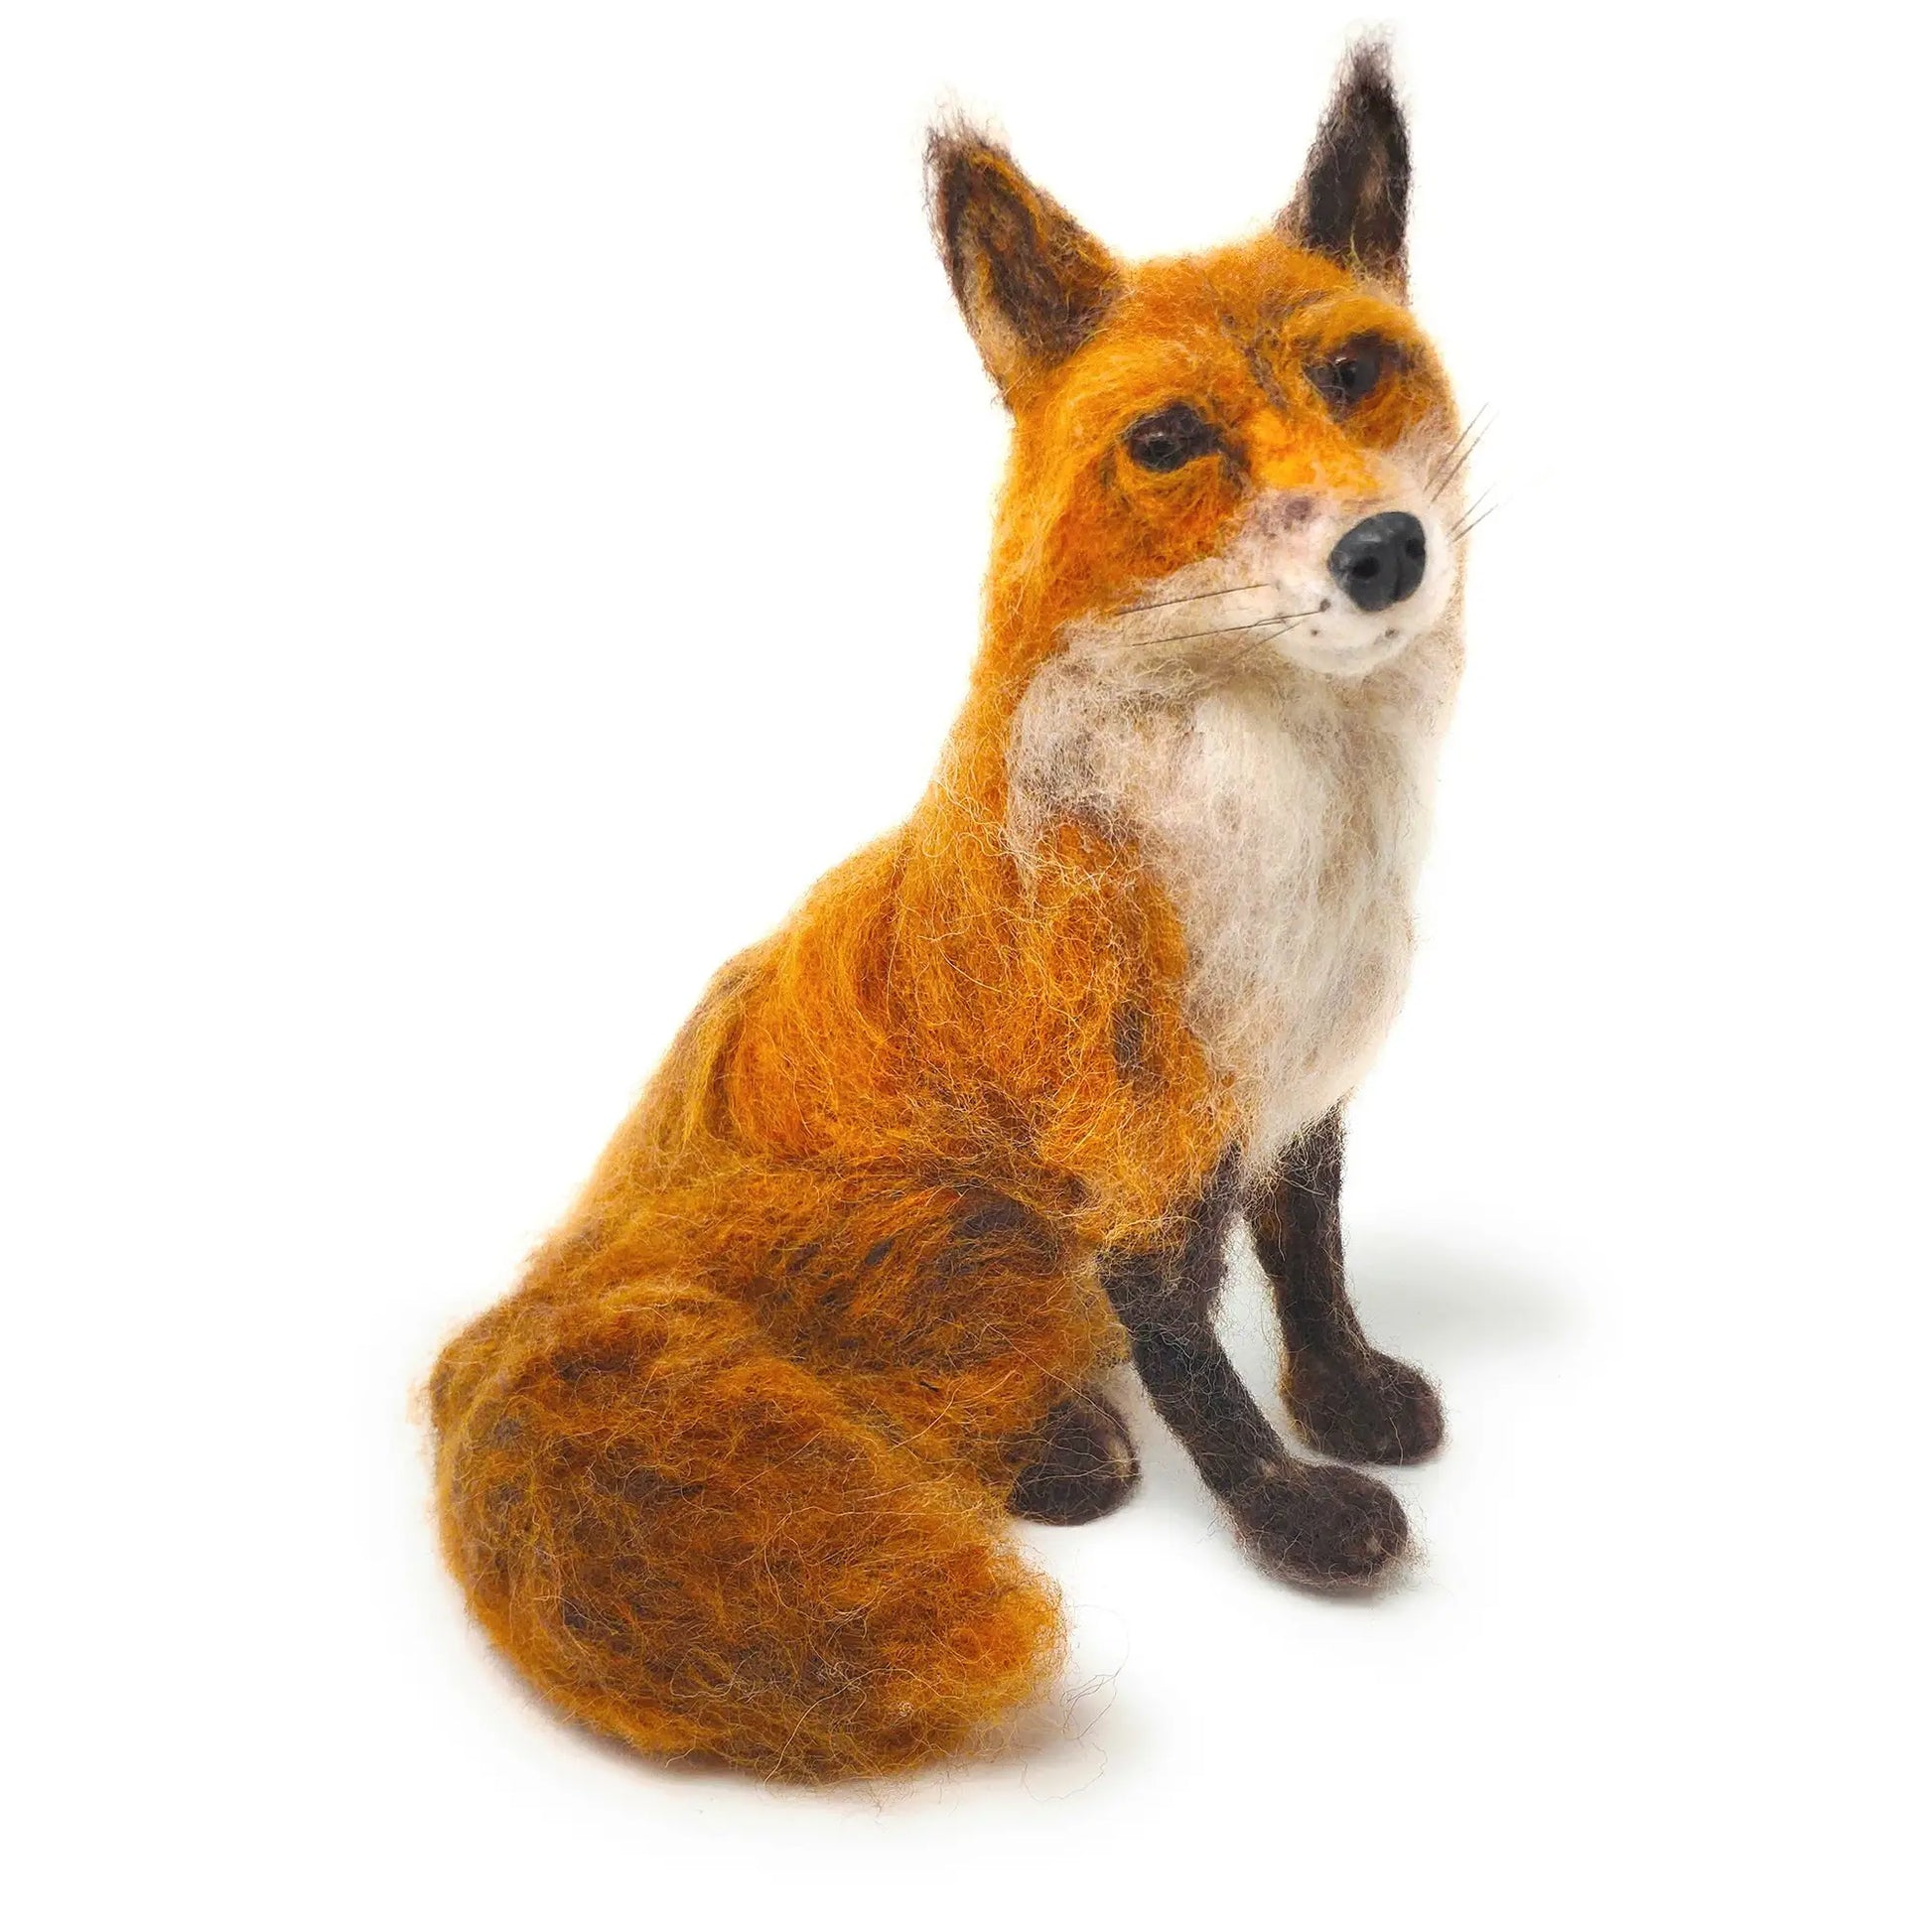 Bird Felt Applique Kits - The Fox Collection